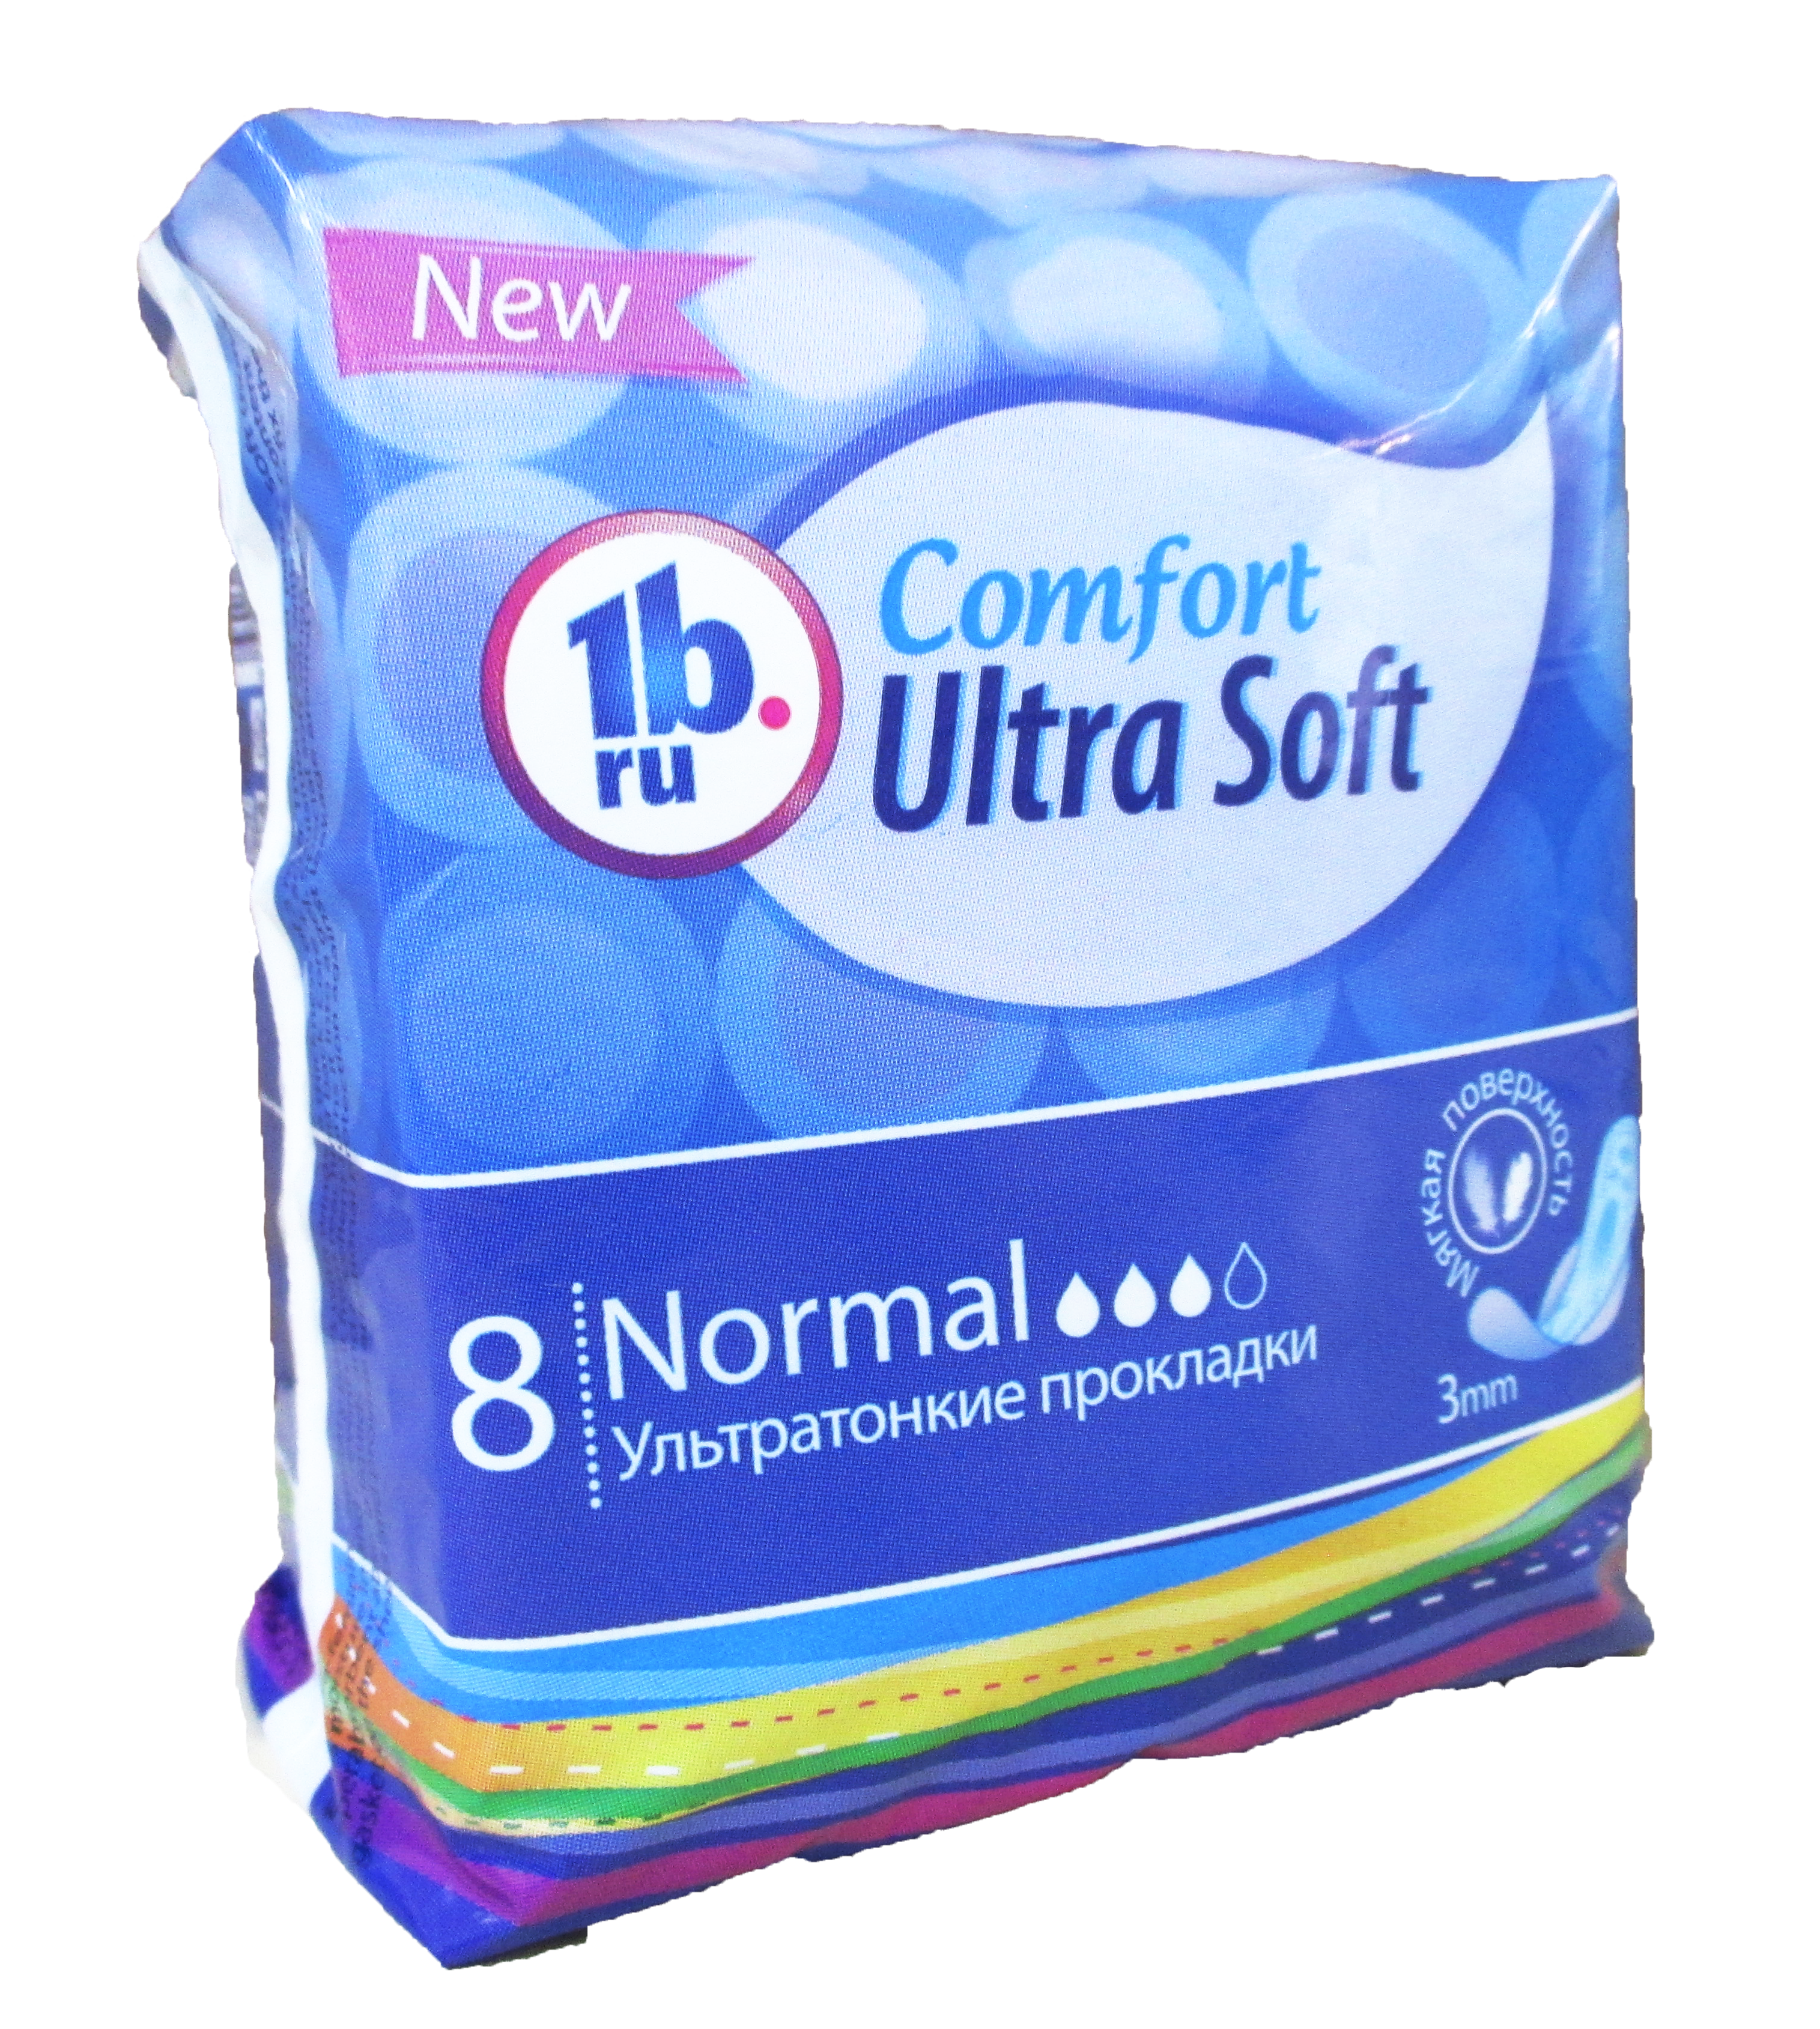 Гигиен.прокладки Comfort 1b.ru Soft ультратонкие 8шт